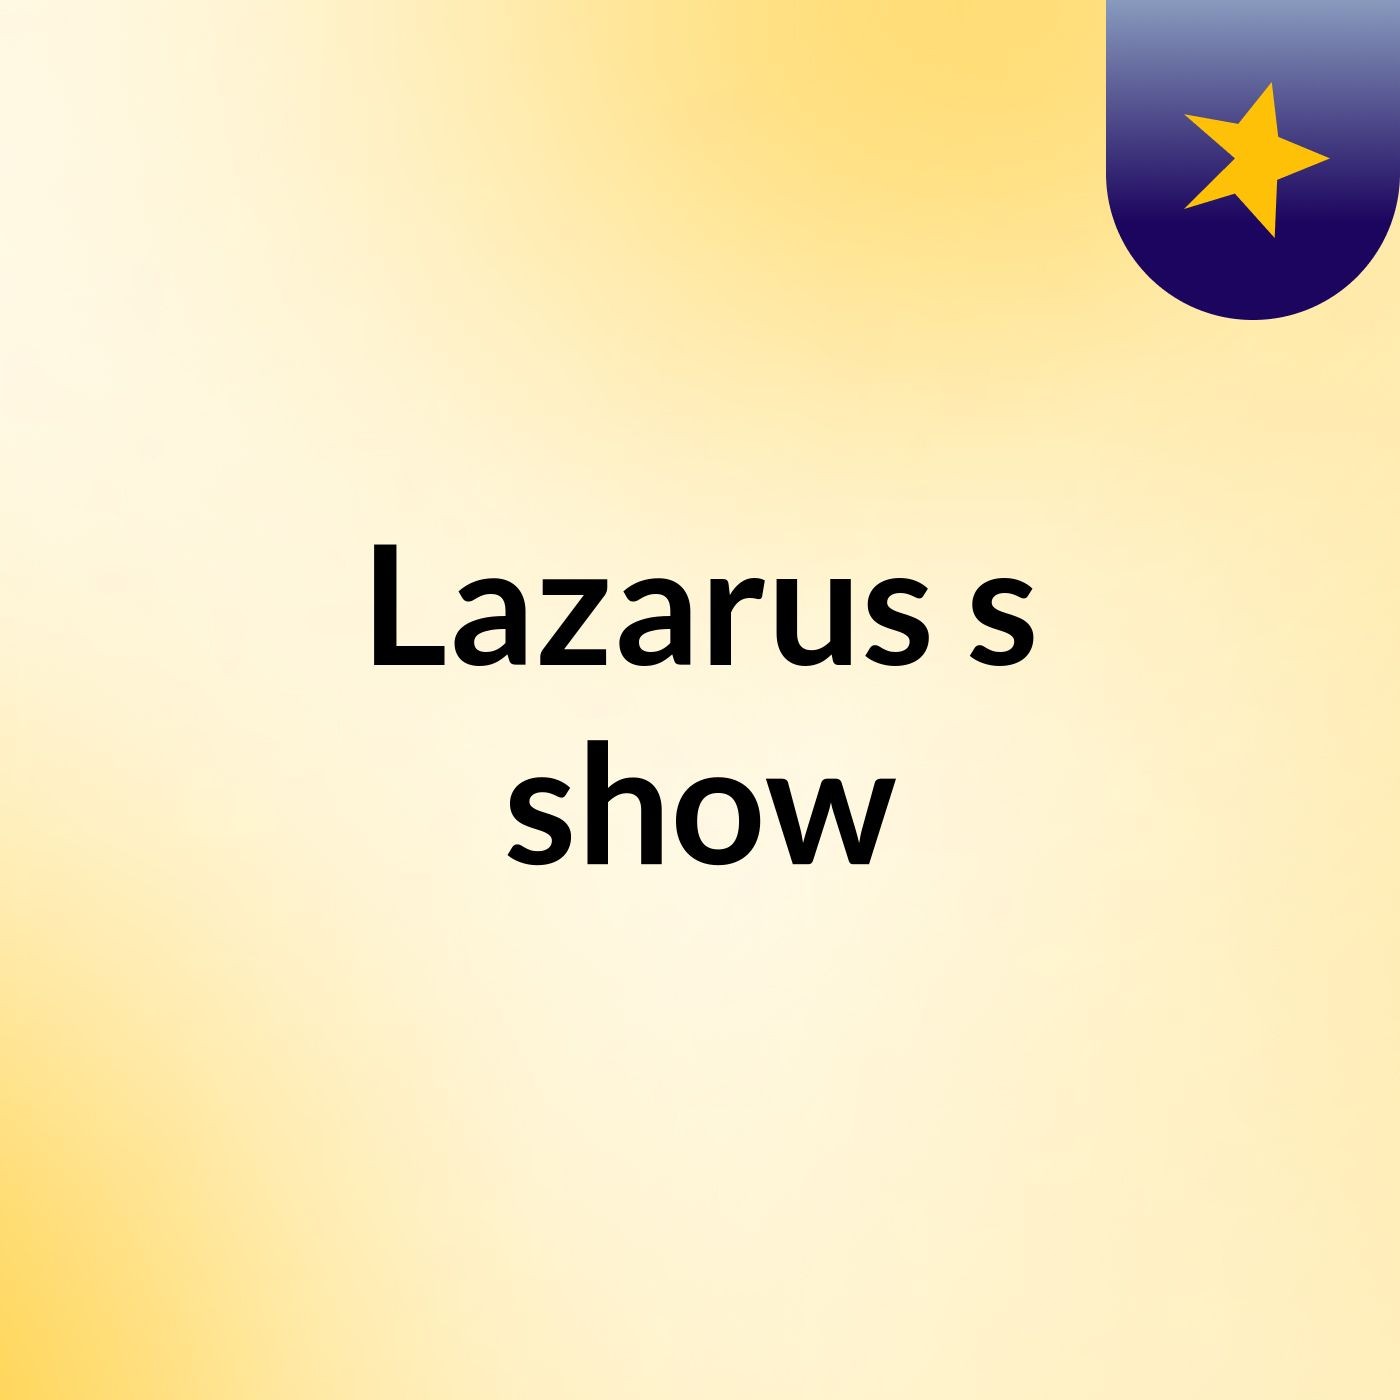 Lazarus's show